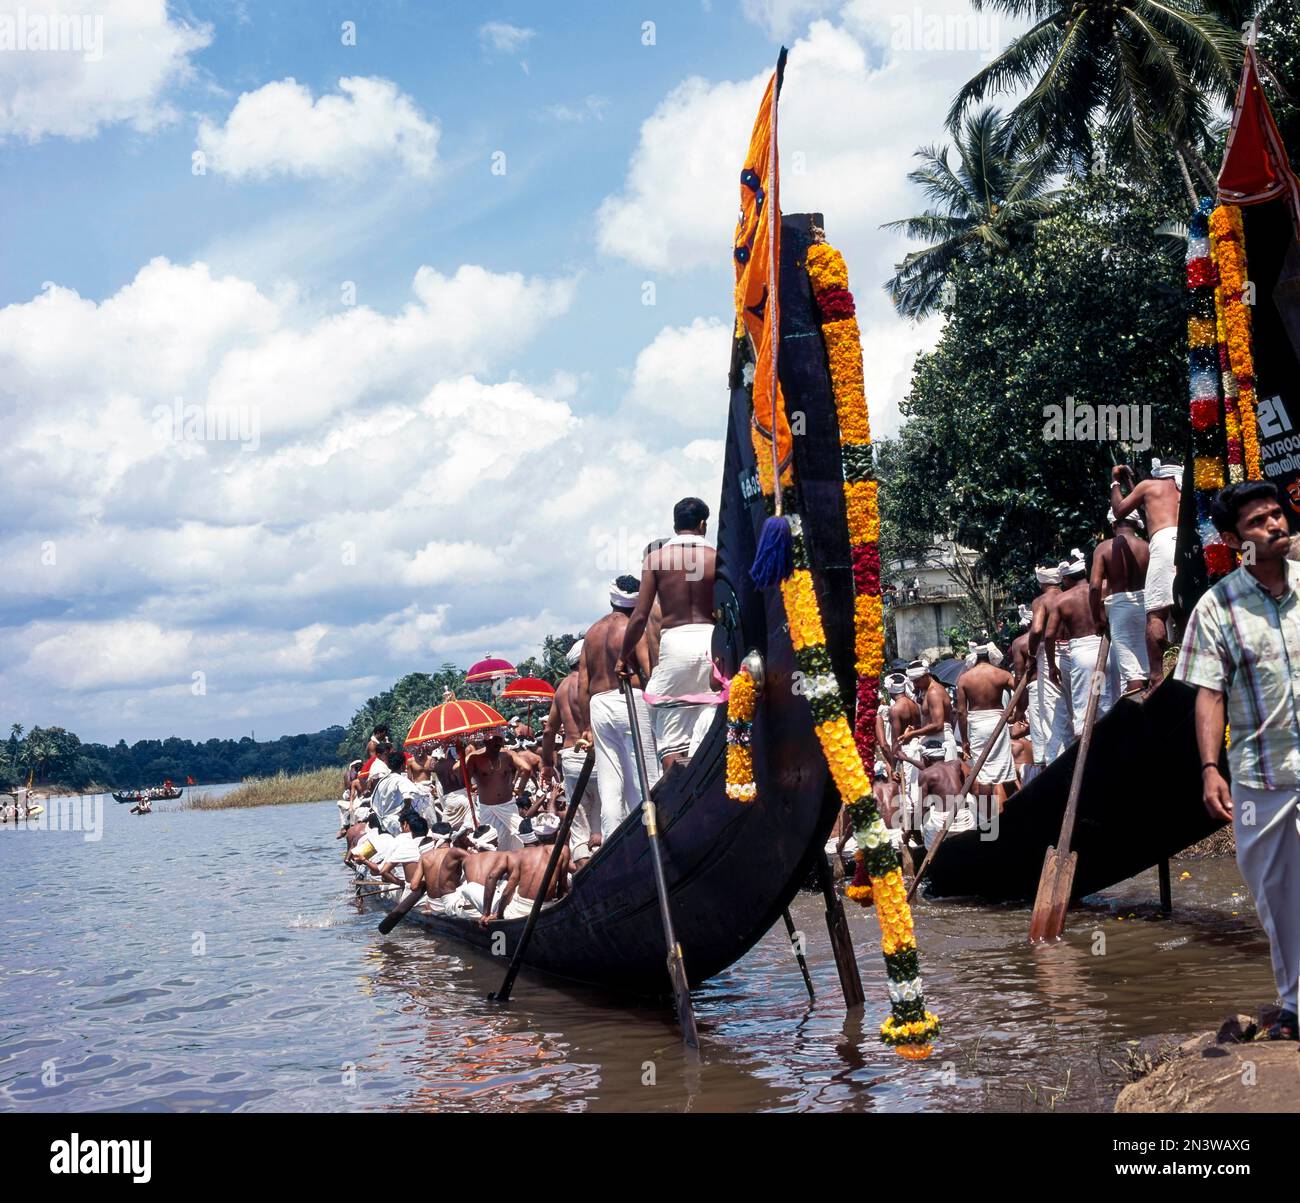 La queue d'Amaram fait partie du bateau Snake, groupe de personnes participant à une course traditionnelle de bateau à serpent à Aranmula, Kerala, Inde, Asie Banque D'Images